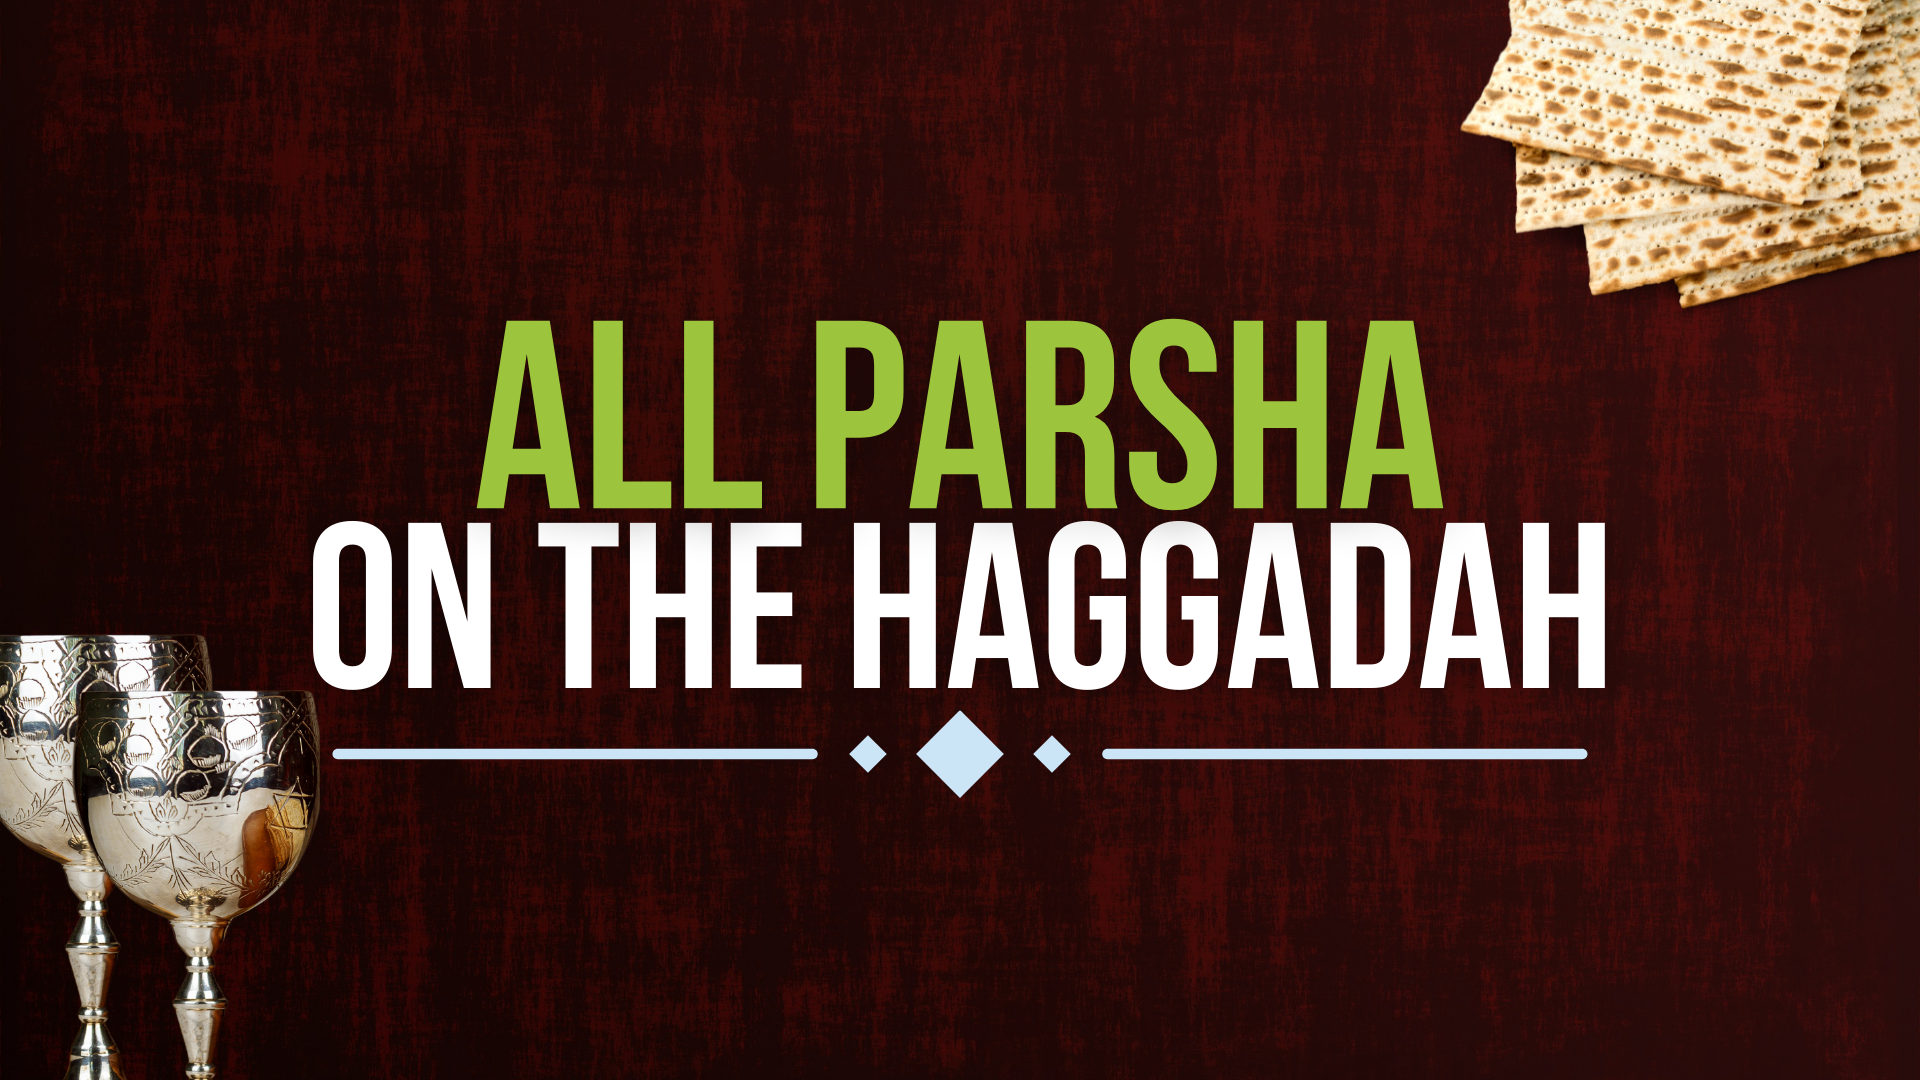 All Parsha on the Haggadah